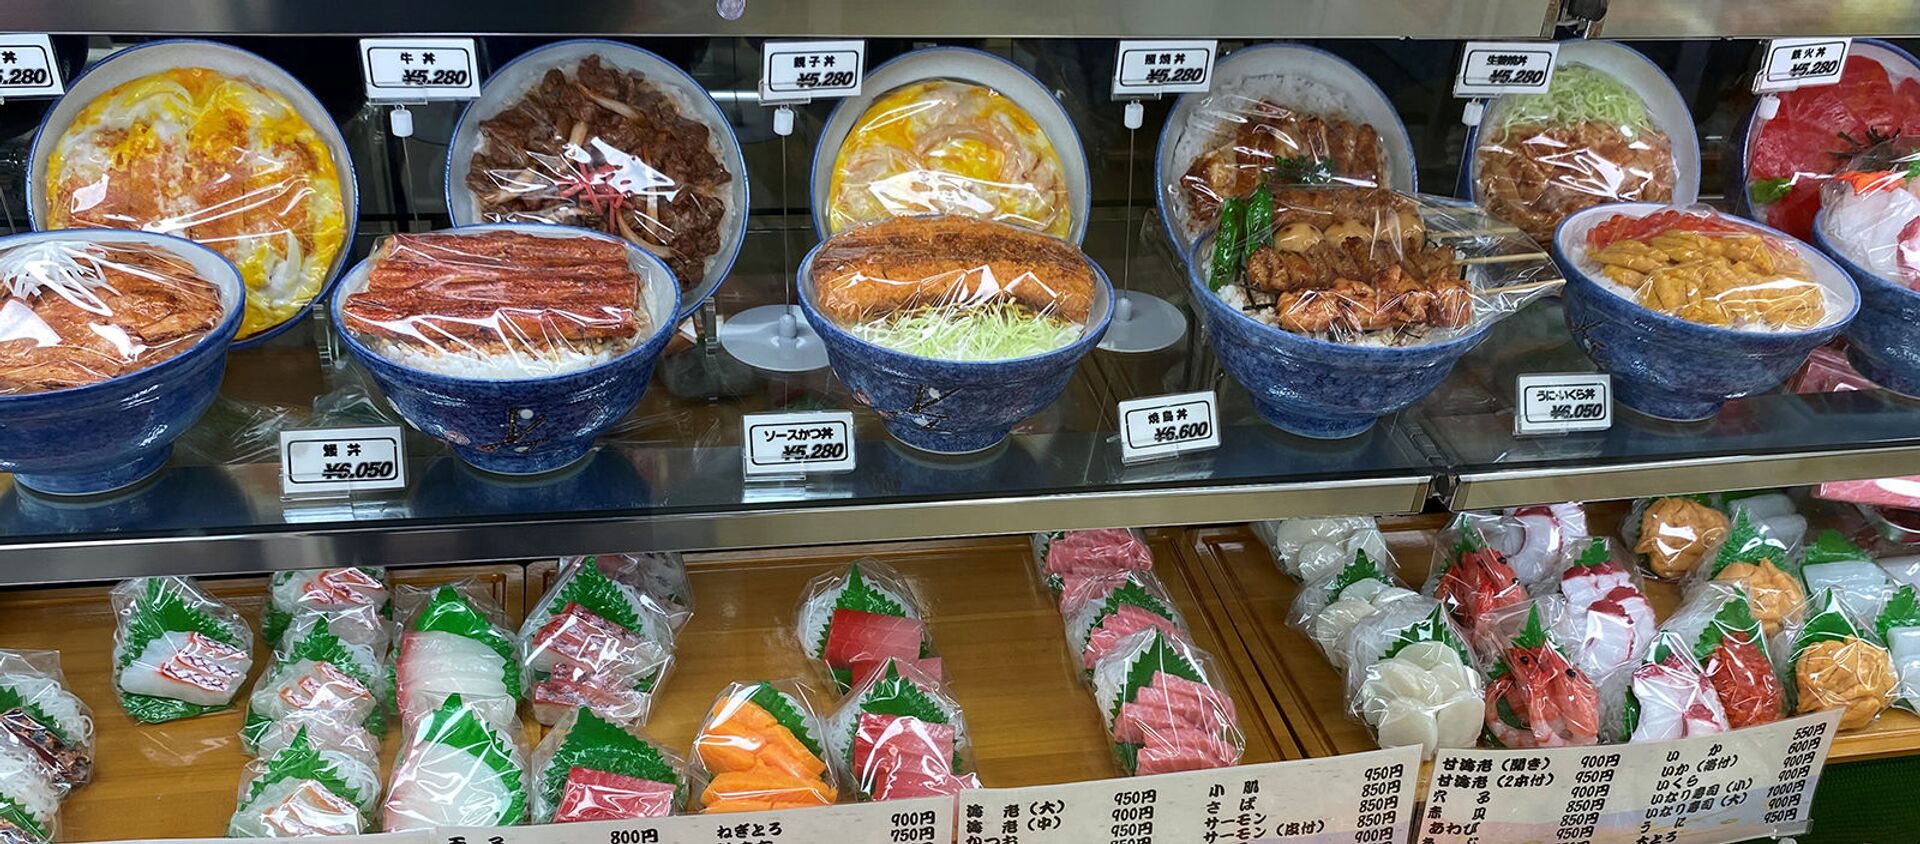 Суши и другая японская еда, которая будет выставлена на Олимпийских играх в Токио - Sputnik Արմենիա, 1920, 22.07.2021